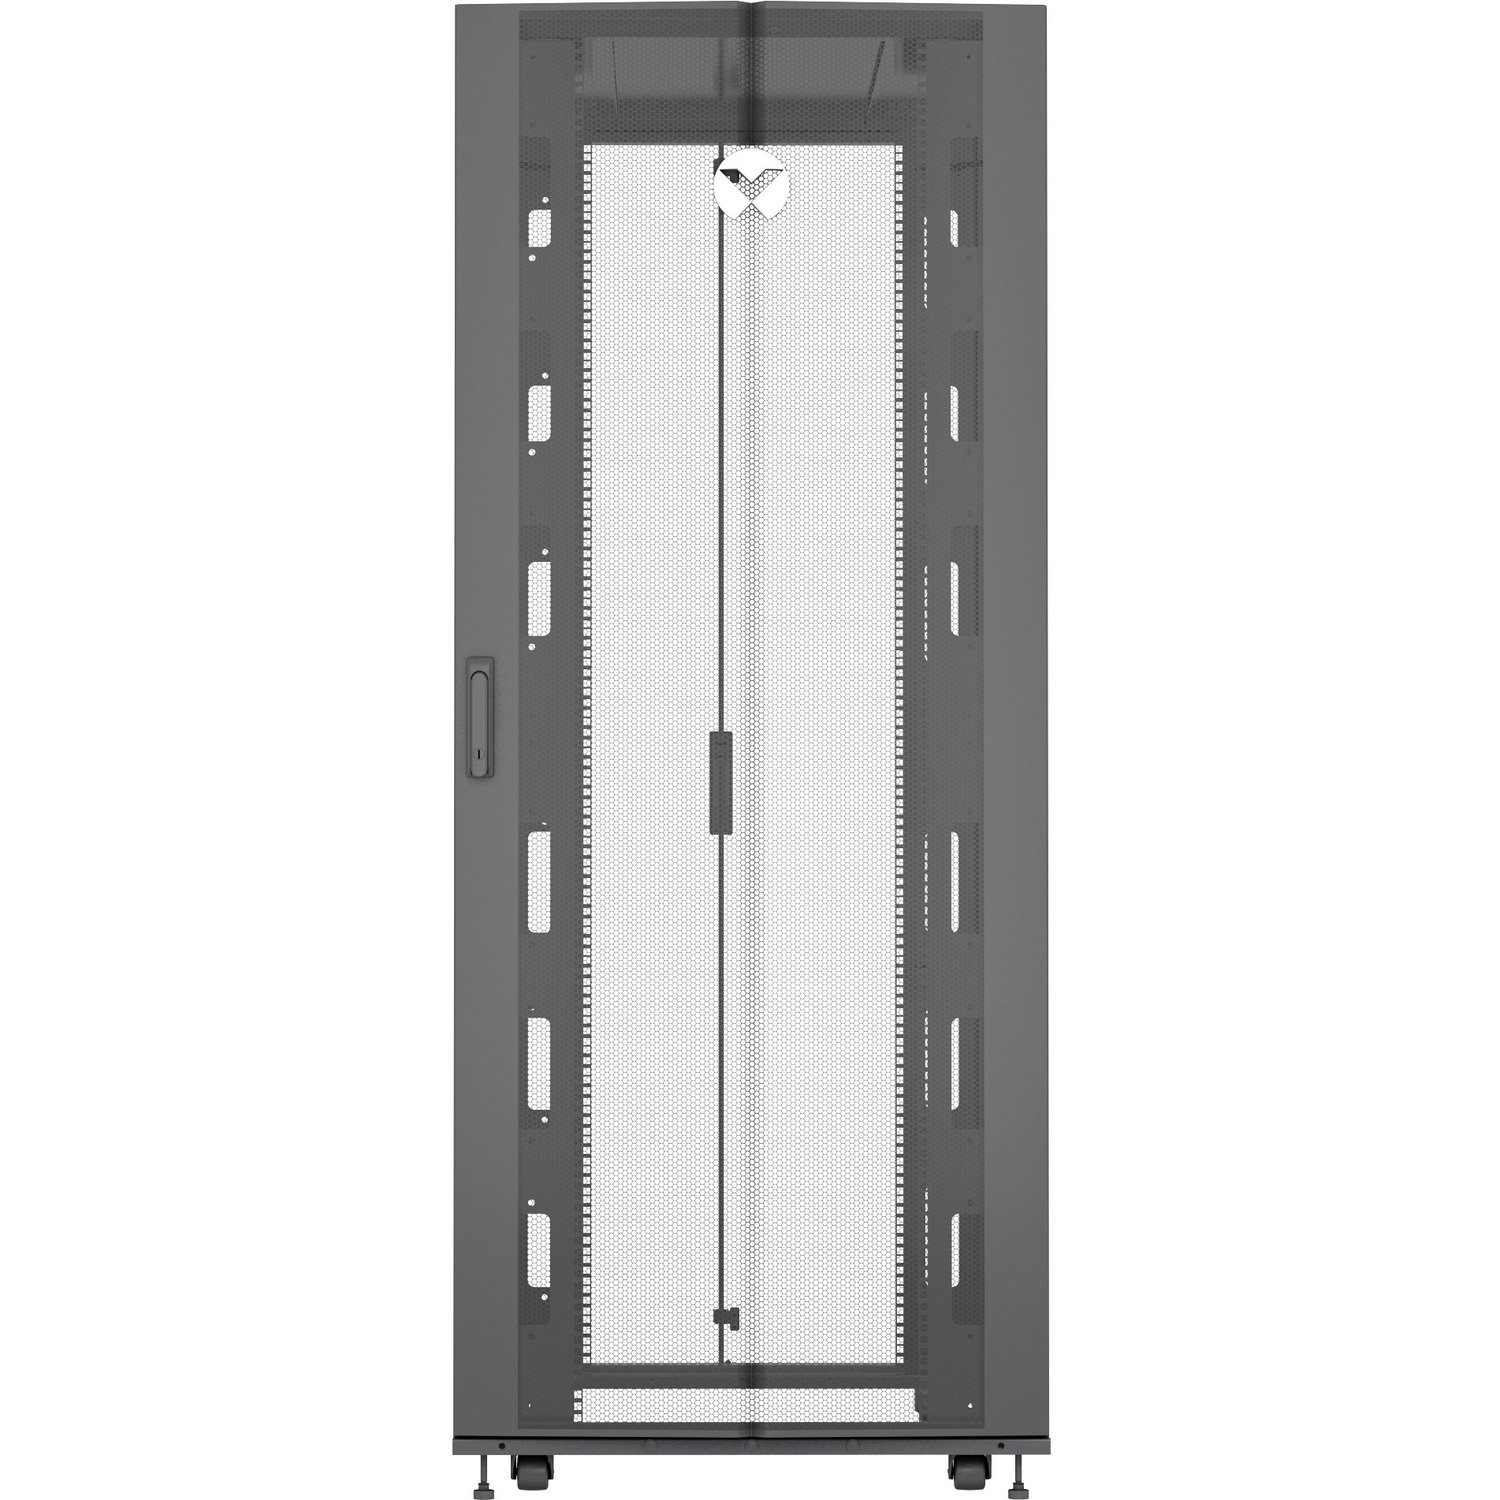 Vertiv VR Rack - 48U Server Rack Enclosure| 600x1200mm| 19-inch Cabinet (VR3307)